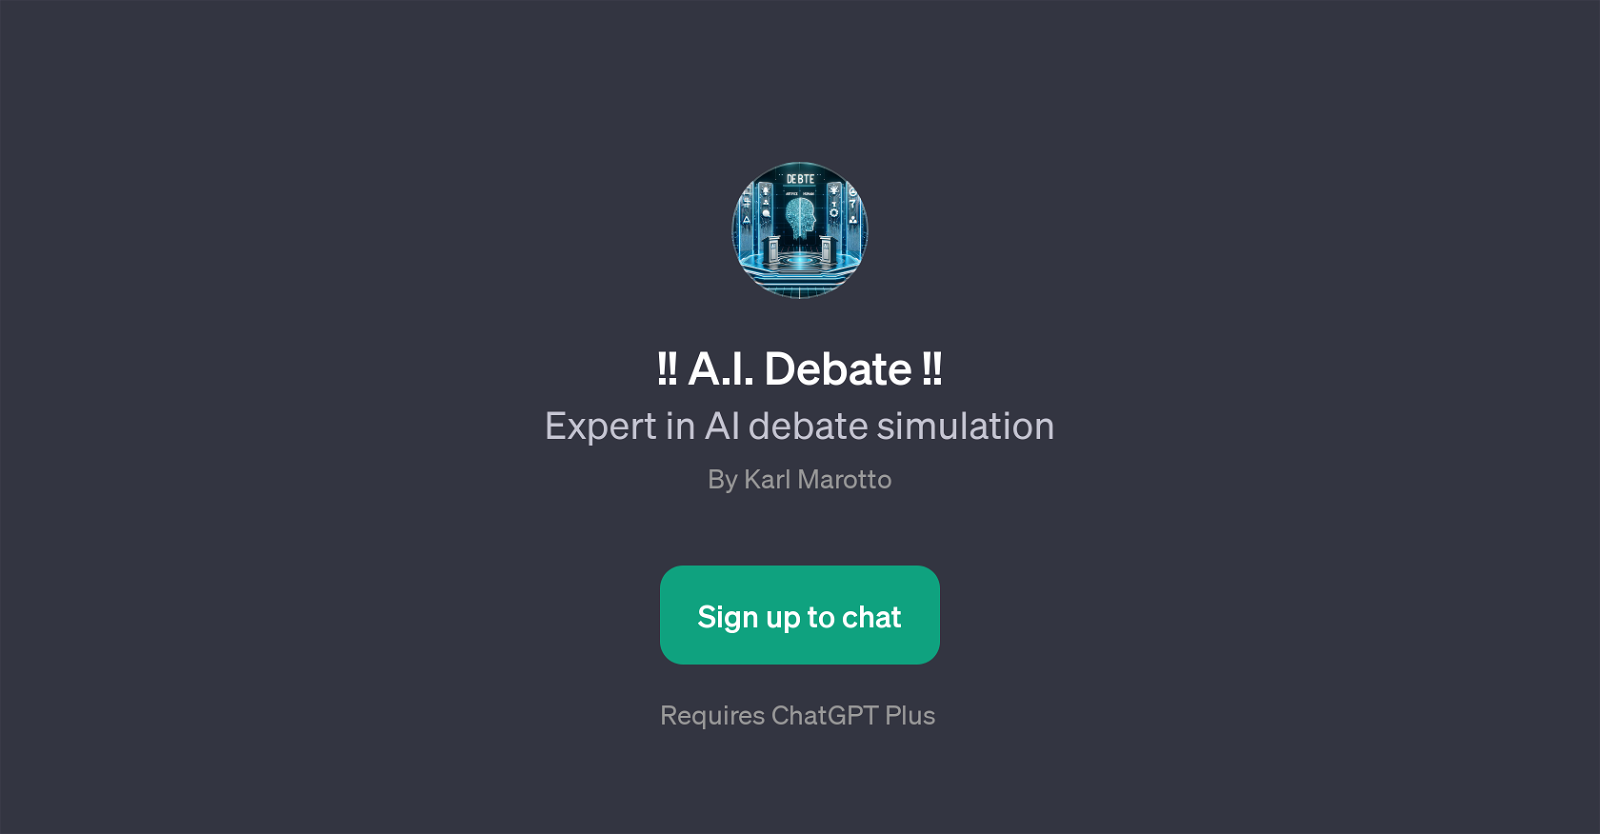 A.I. Debate website